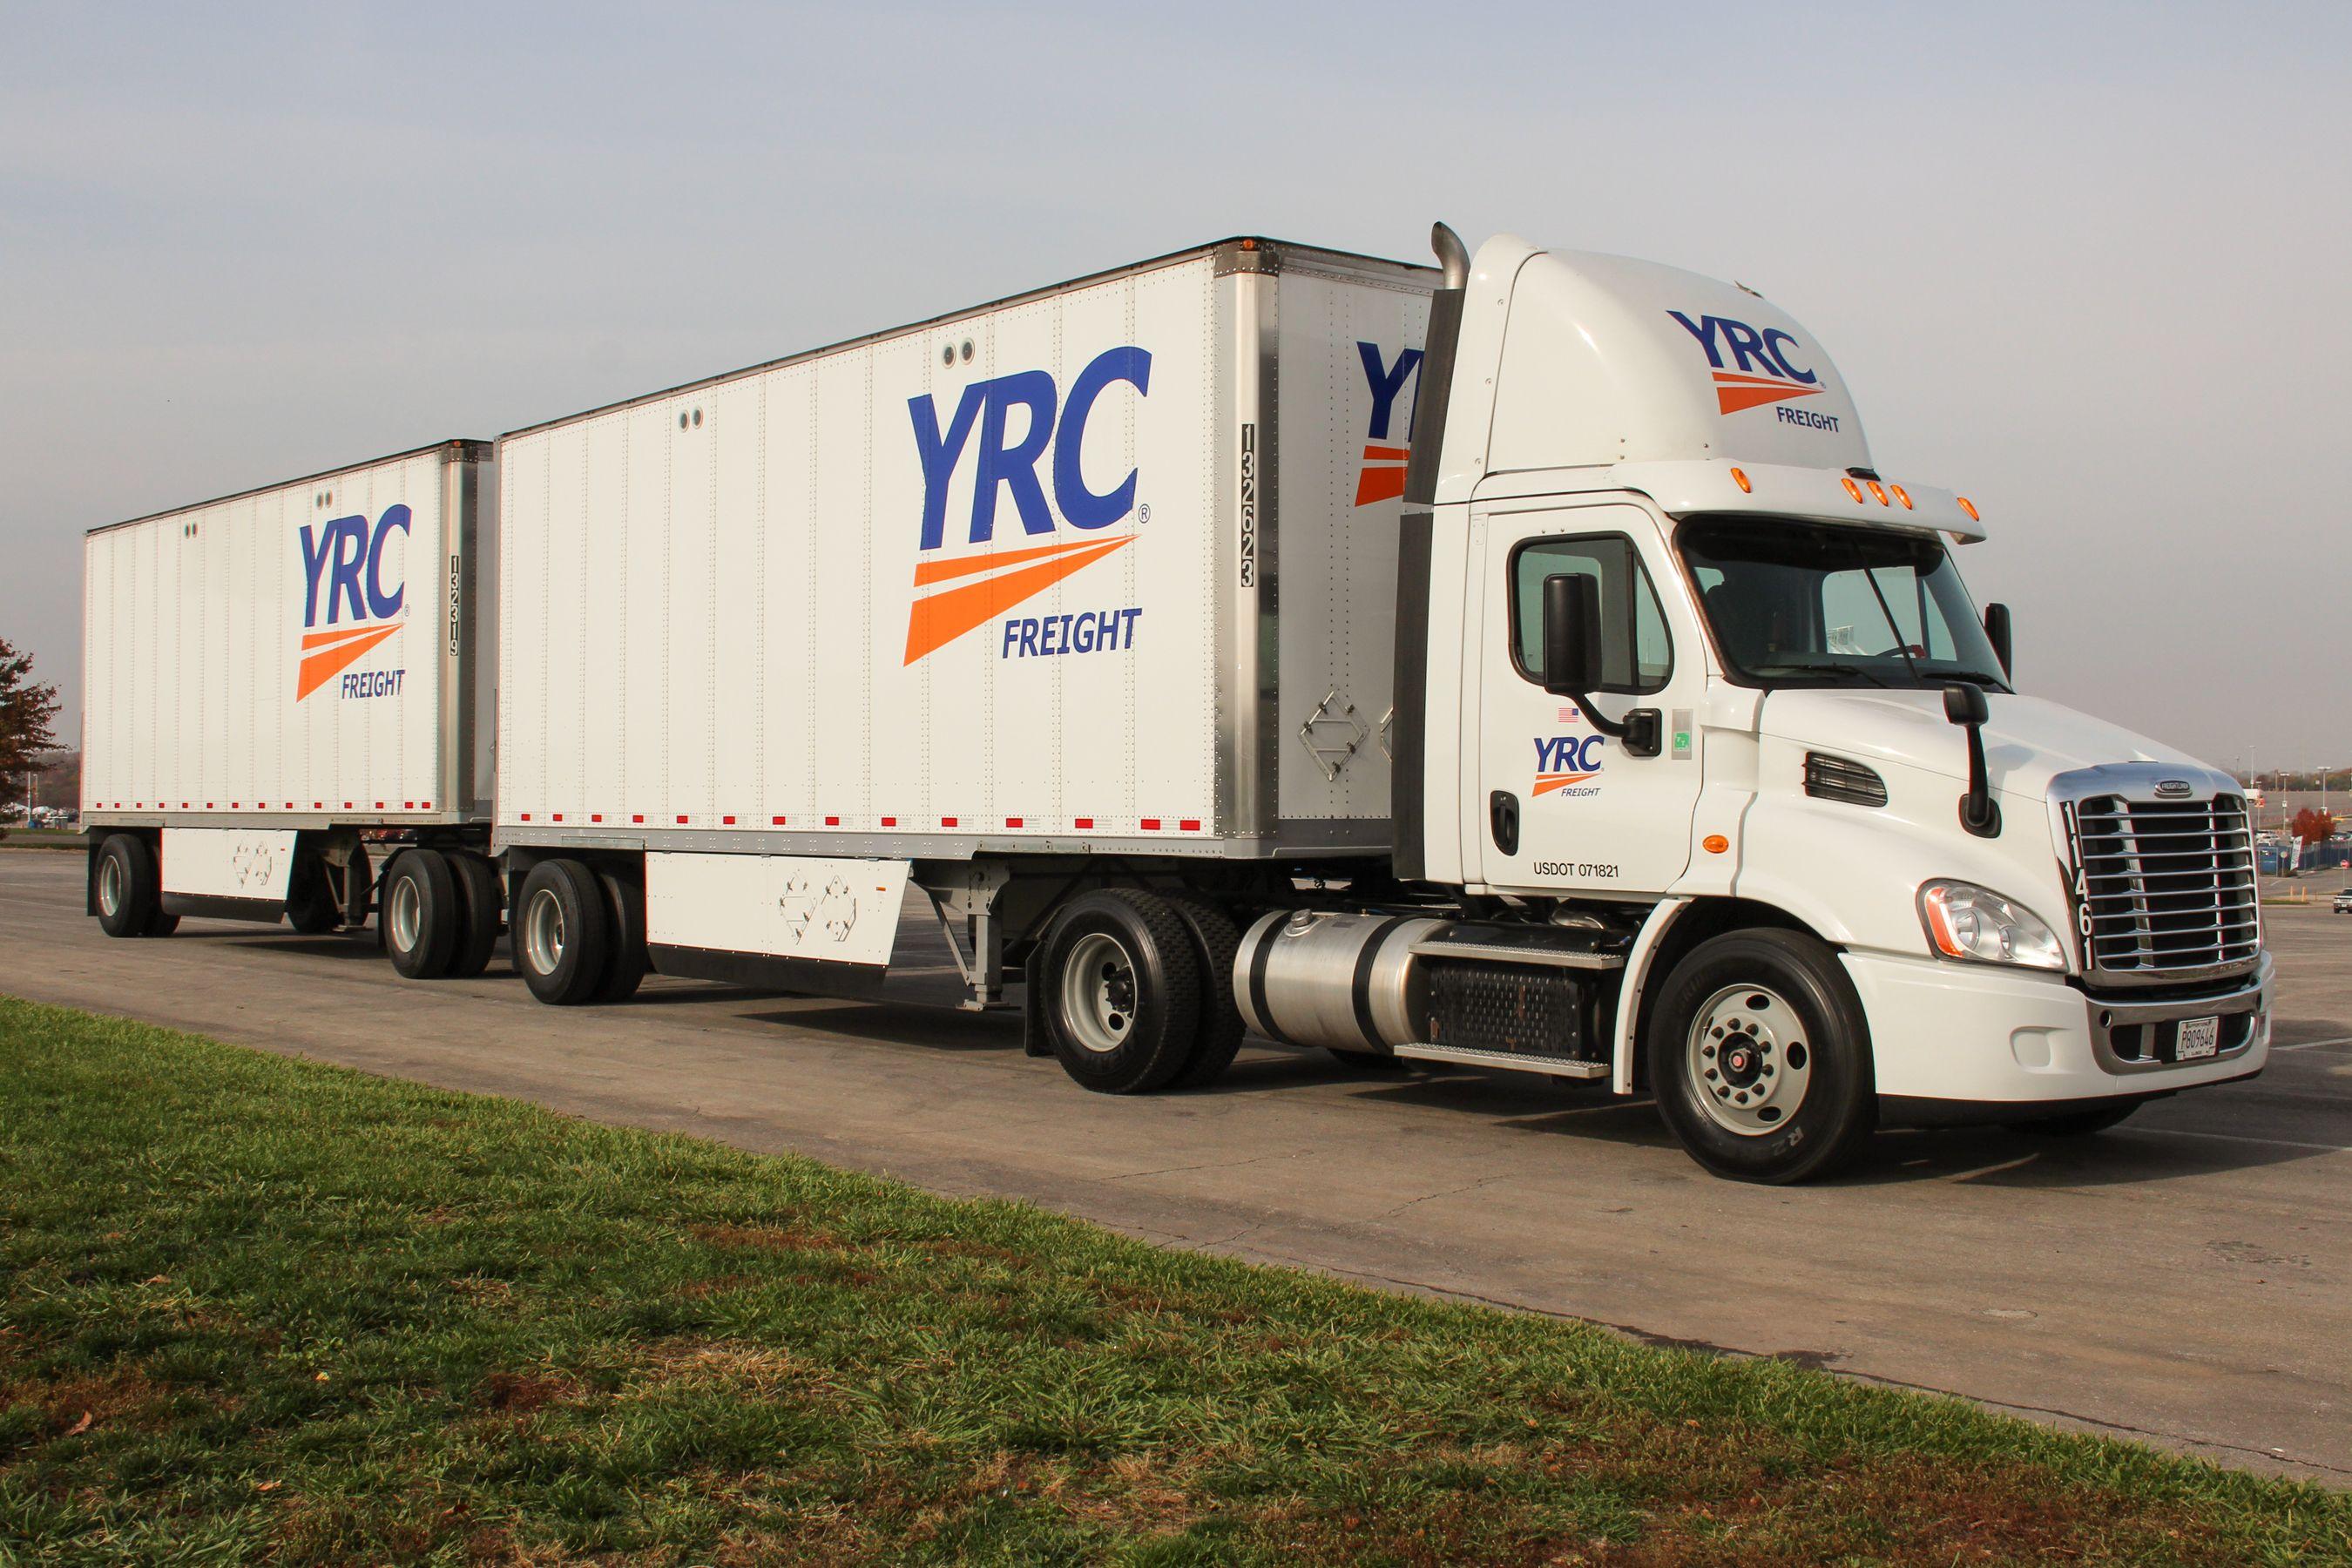 Yrcw Logo - About YRC Worldwide: Transportation Service Provider